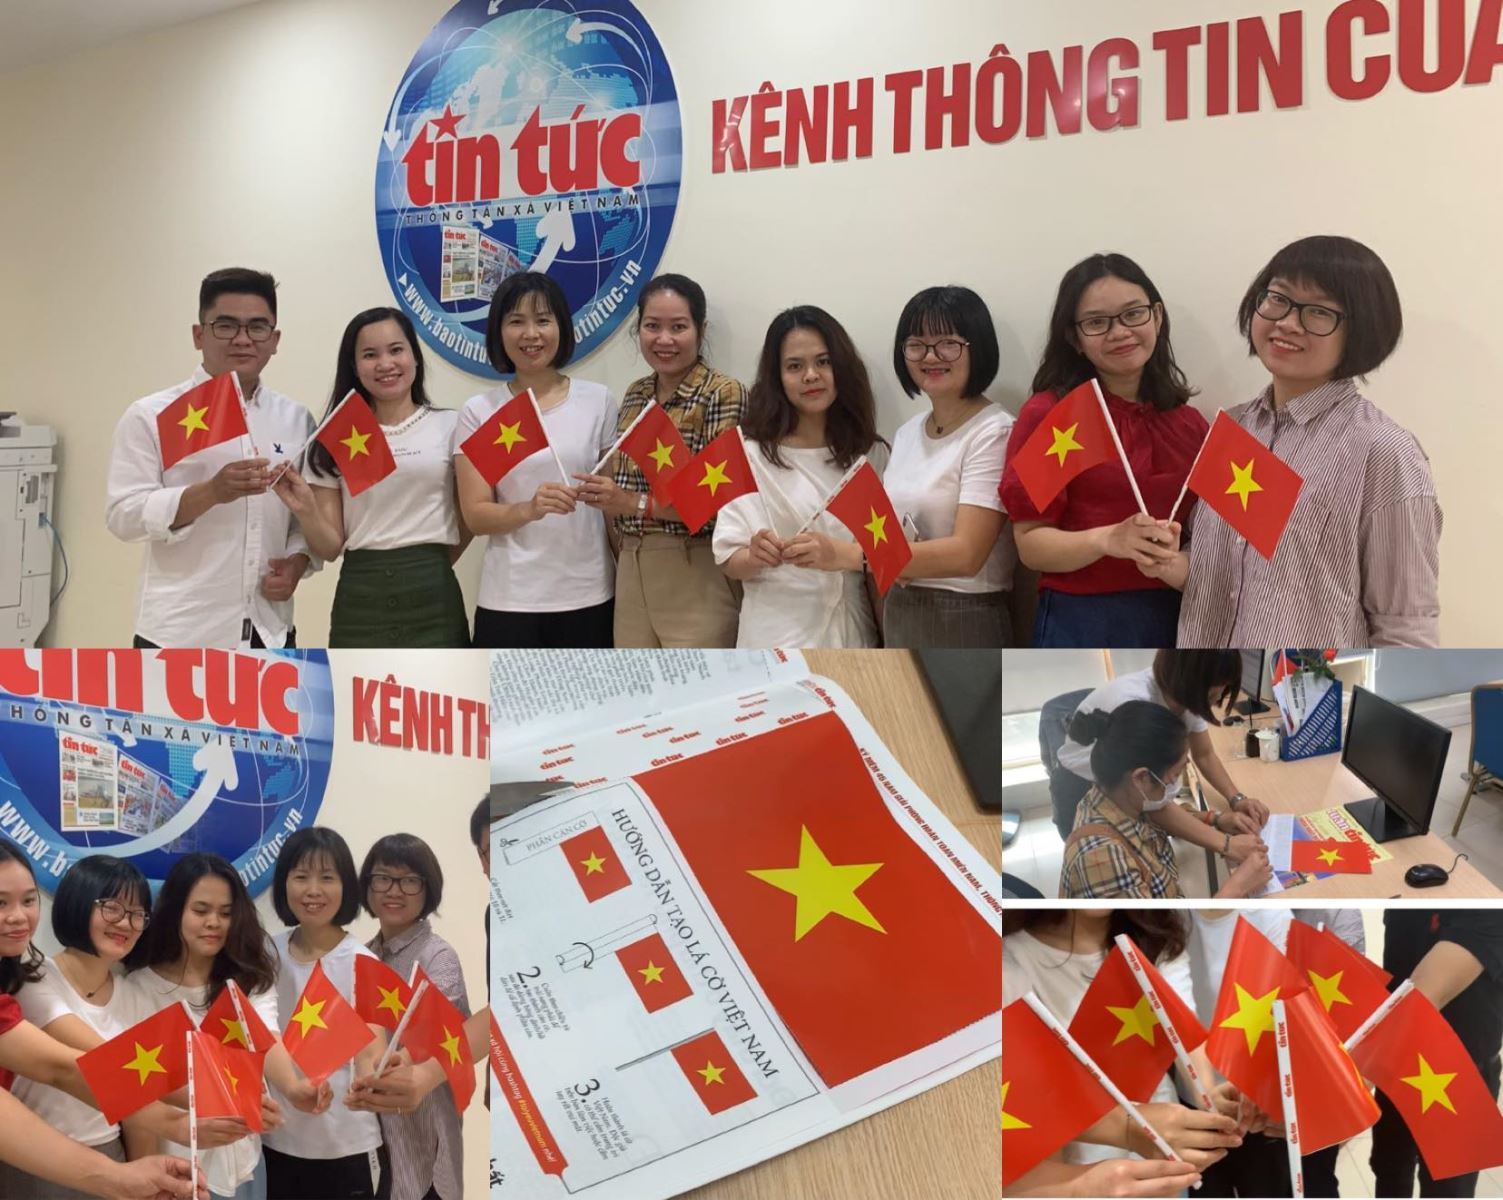 Lan tỏa hình ảnh lá cờ Việt Nam in trên báo Tin tức | baotintuc.vn